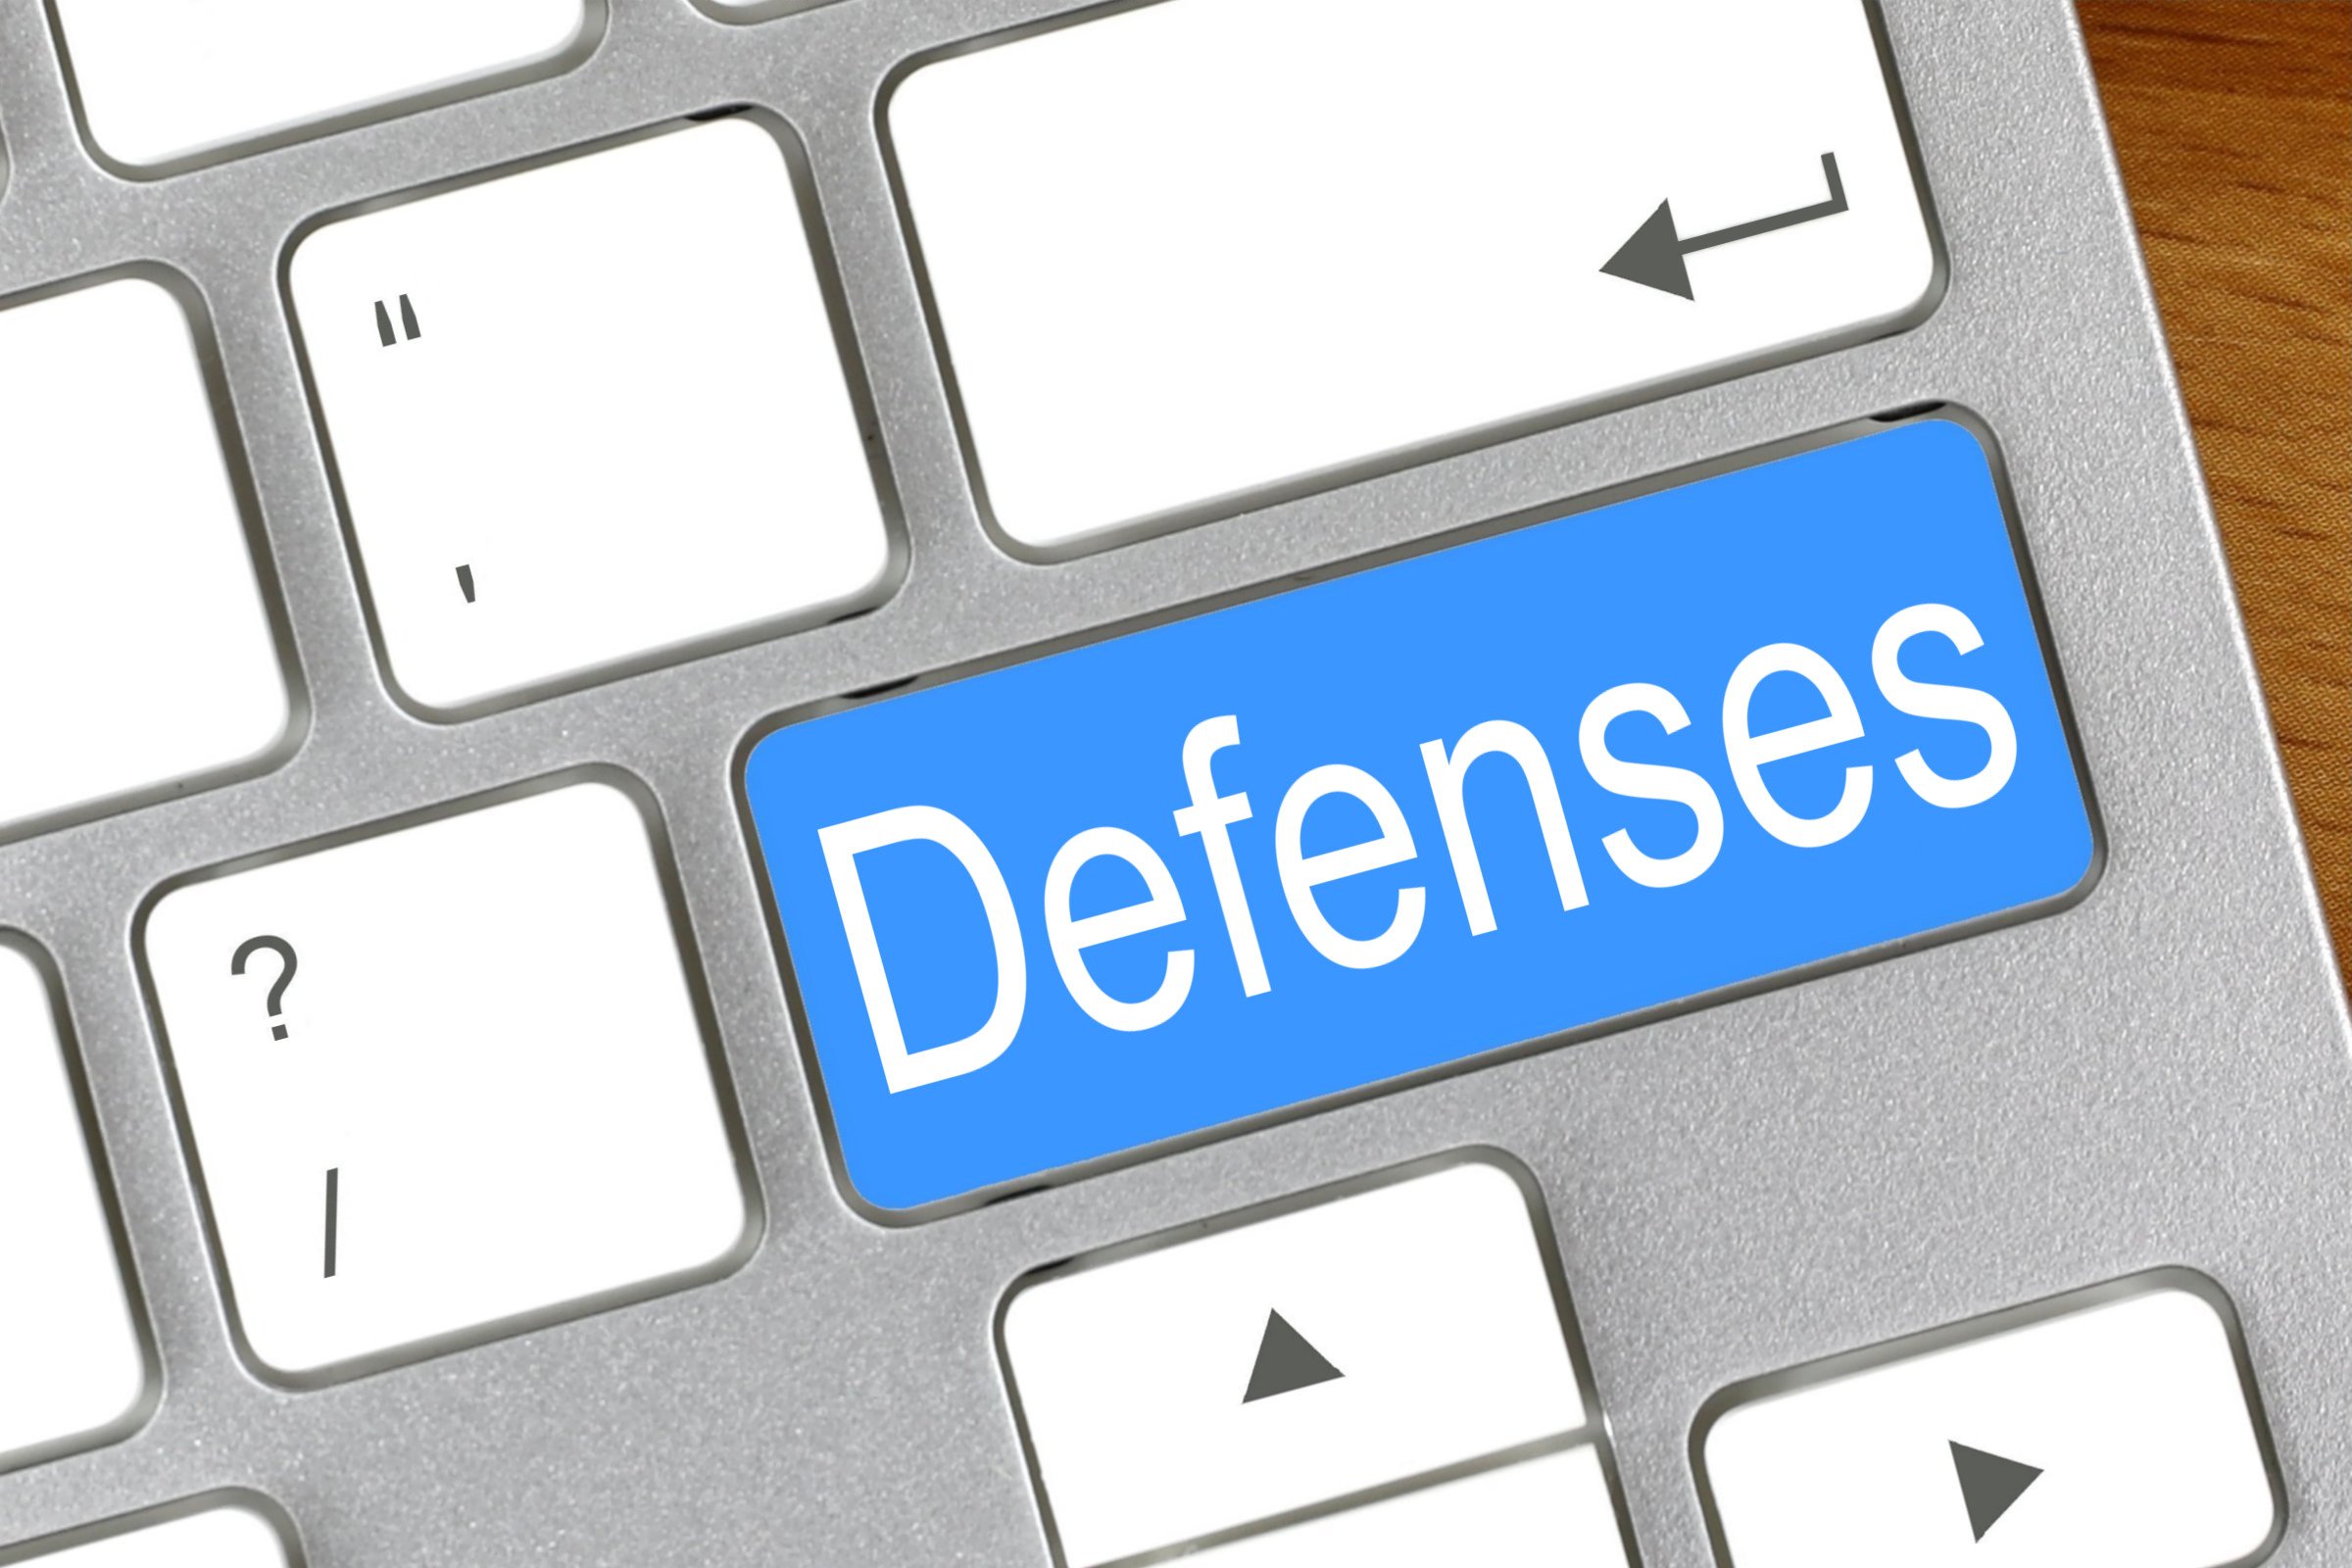 defenses